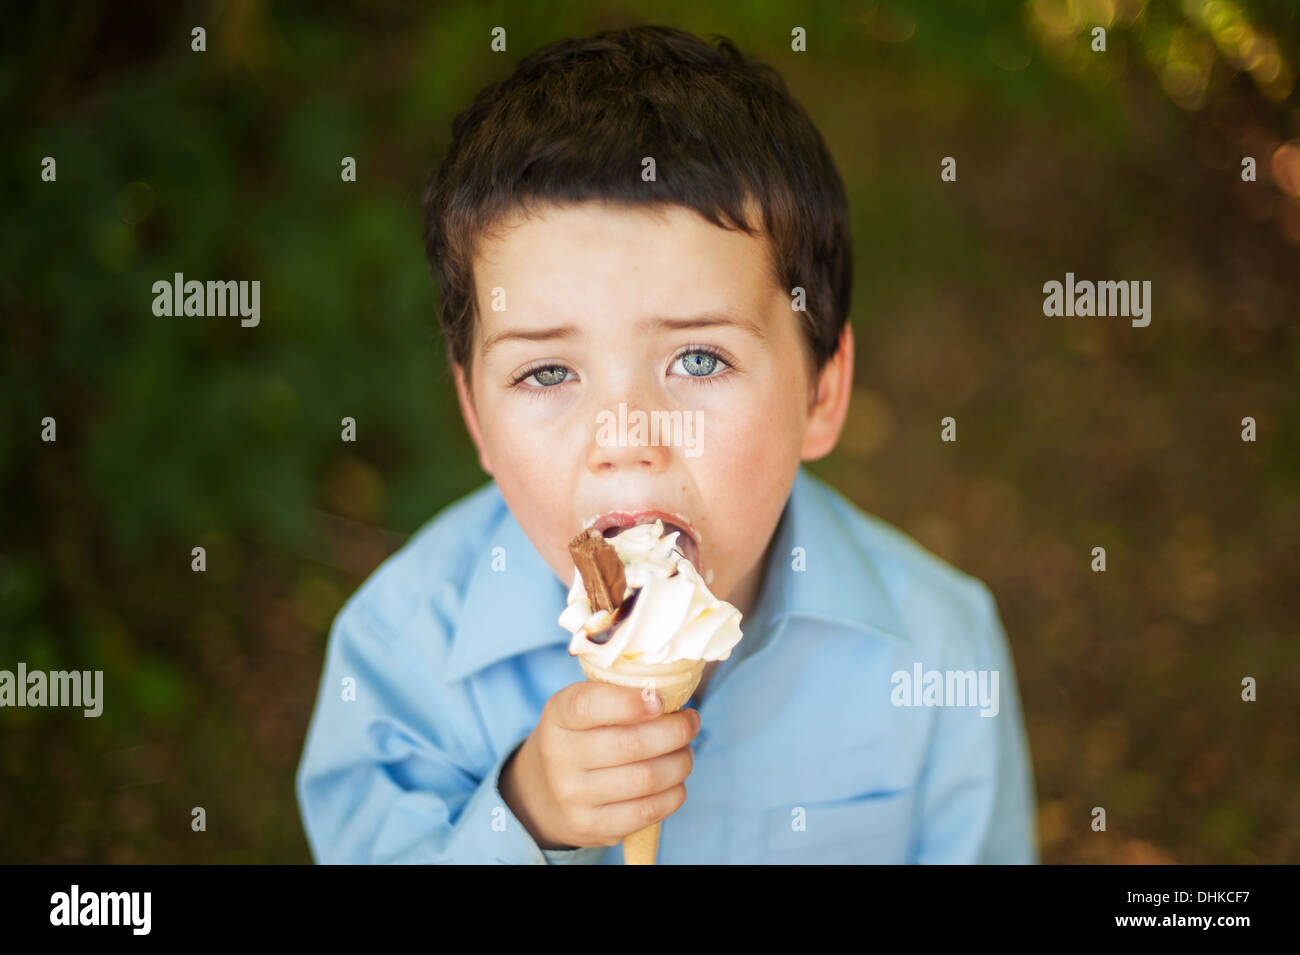 School Boy Eating Ice Cream Stock Photo